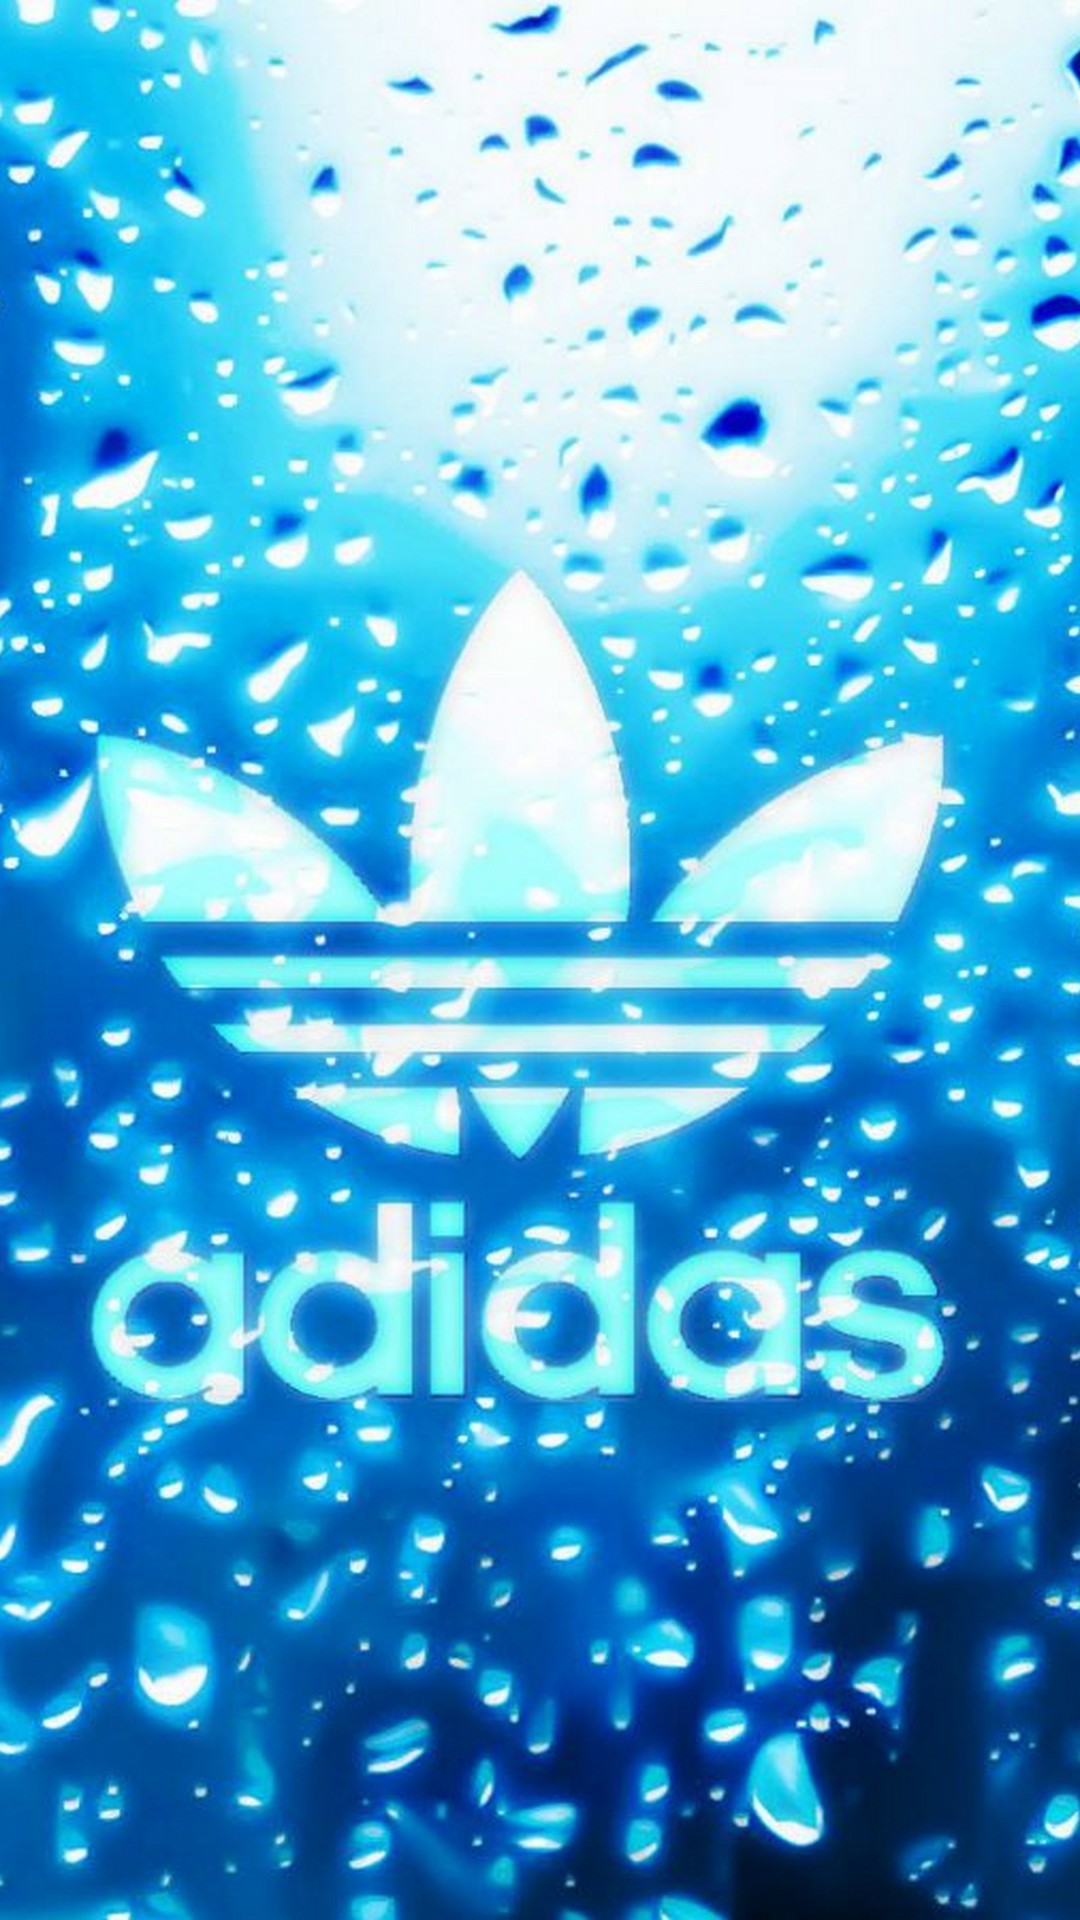 816 hình ảnh về logo Adidas, thiết kế logo chuyên nghiệp, đẳng cấp nhất -  Mua bán hình ảnh shutterstock giá rẻ chỉ từ 3.000 đ trong 2 phút